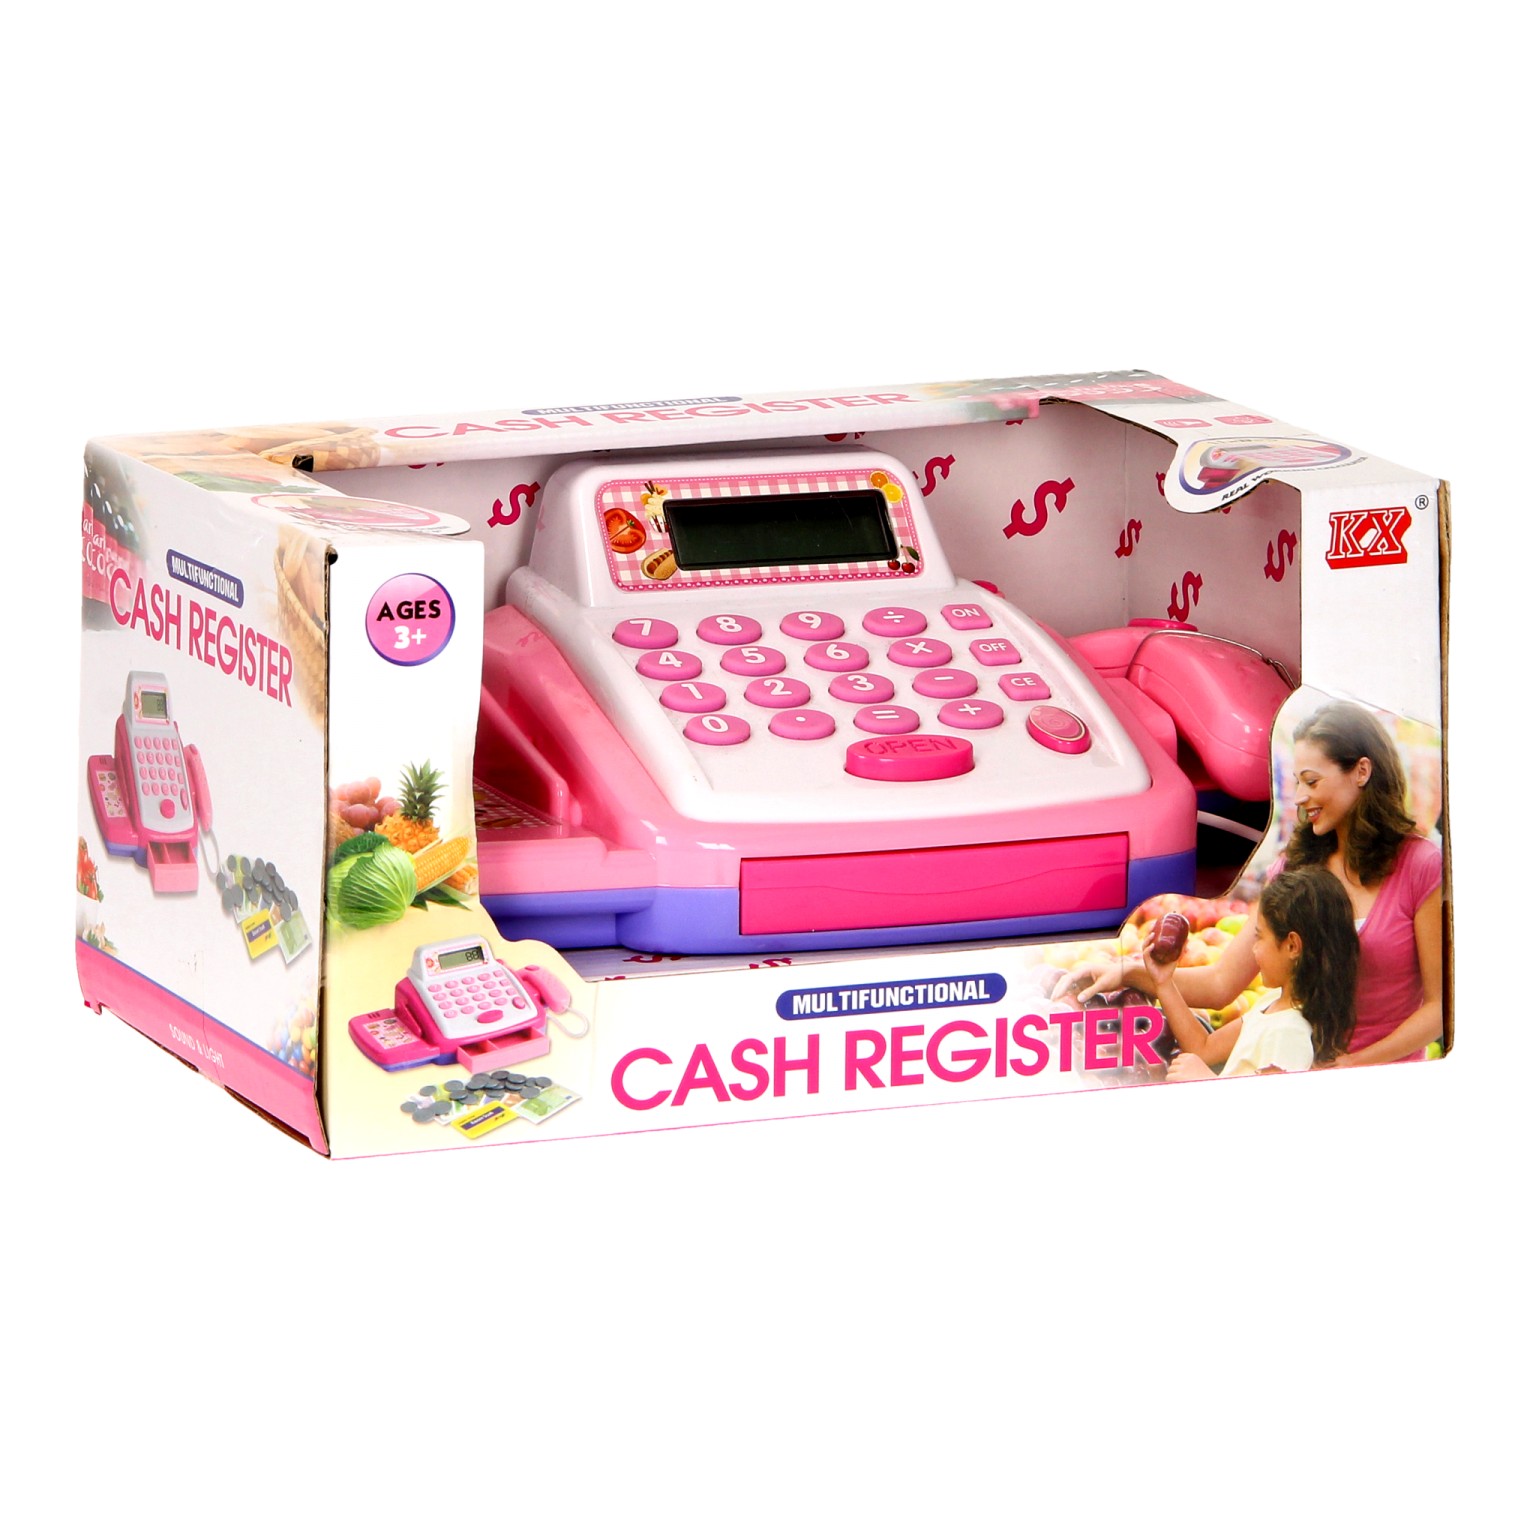 Caisse enregistreuse jouet rose